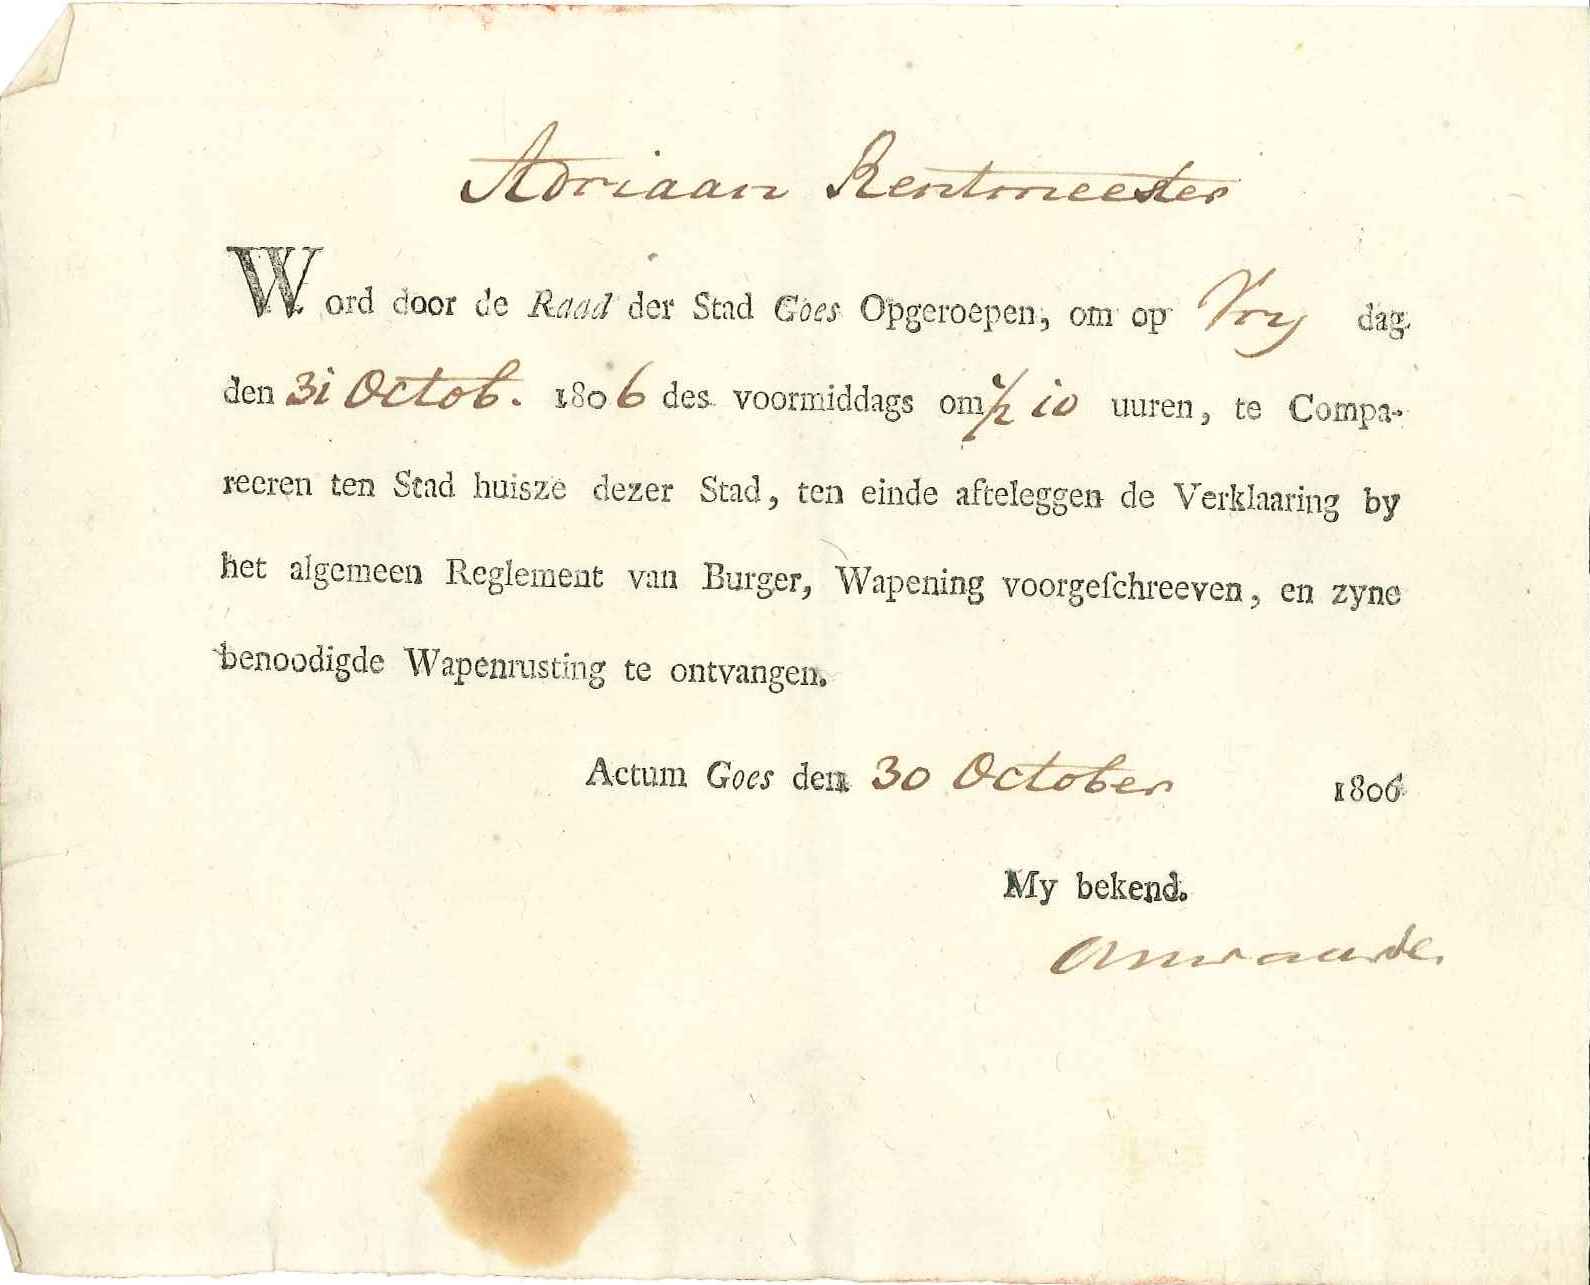 Oproep voor A. Rentmeester om een eed af te leggen en zijn bewapening te ontvangen, 1806.